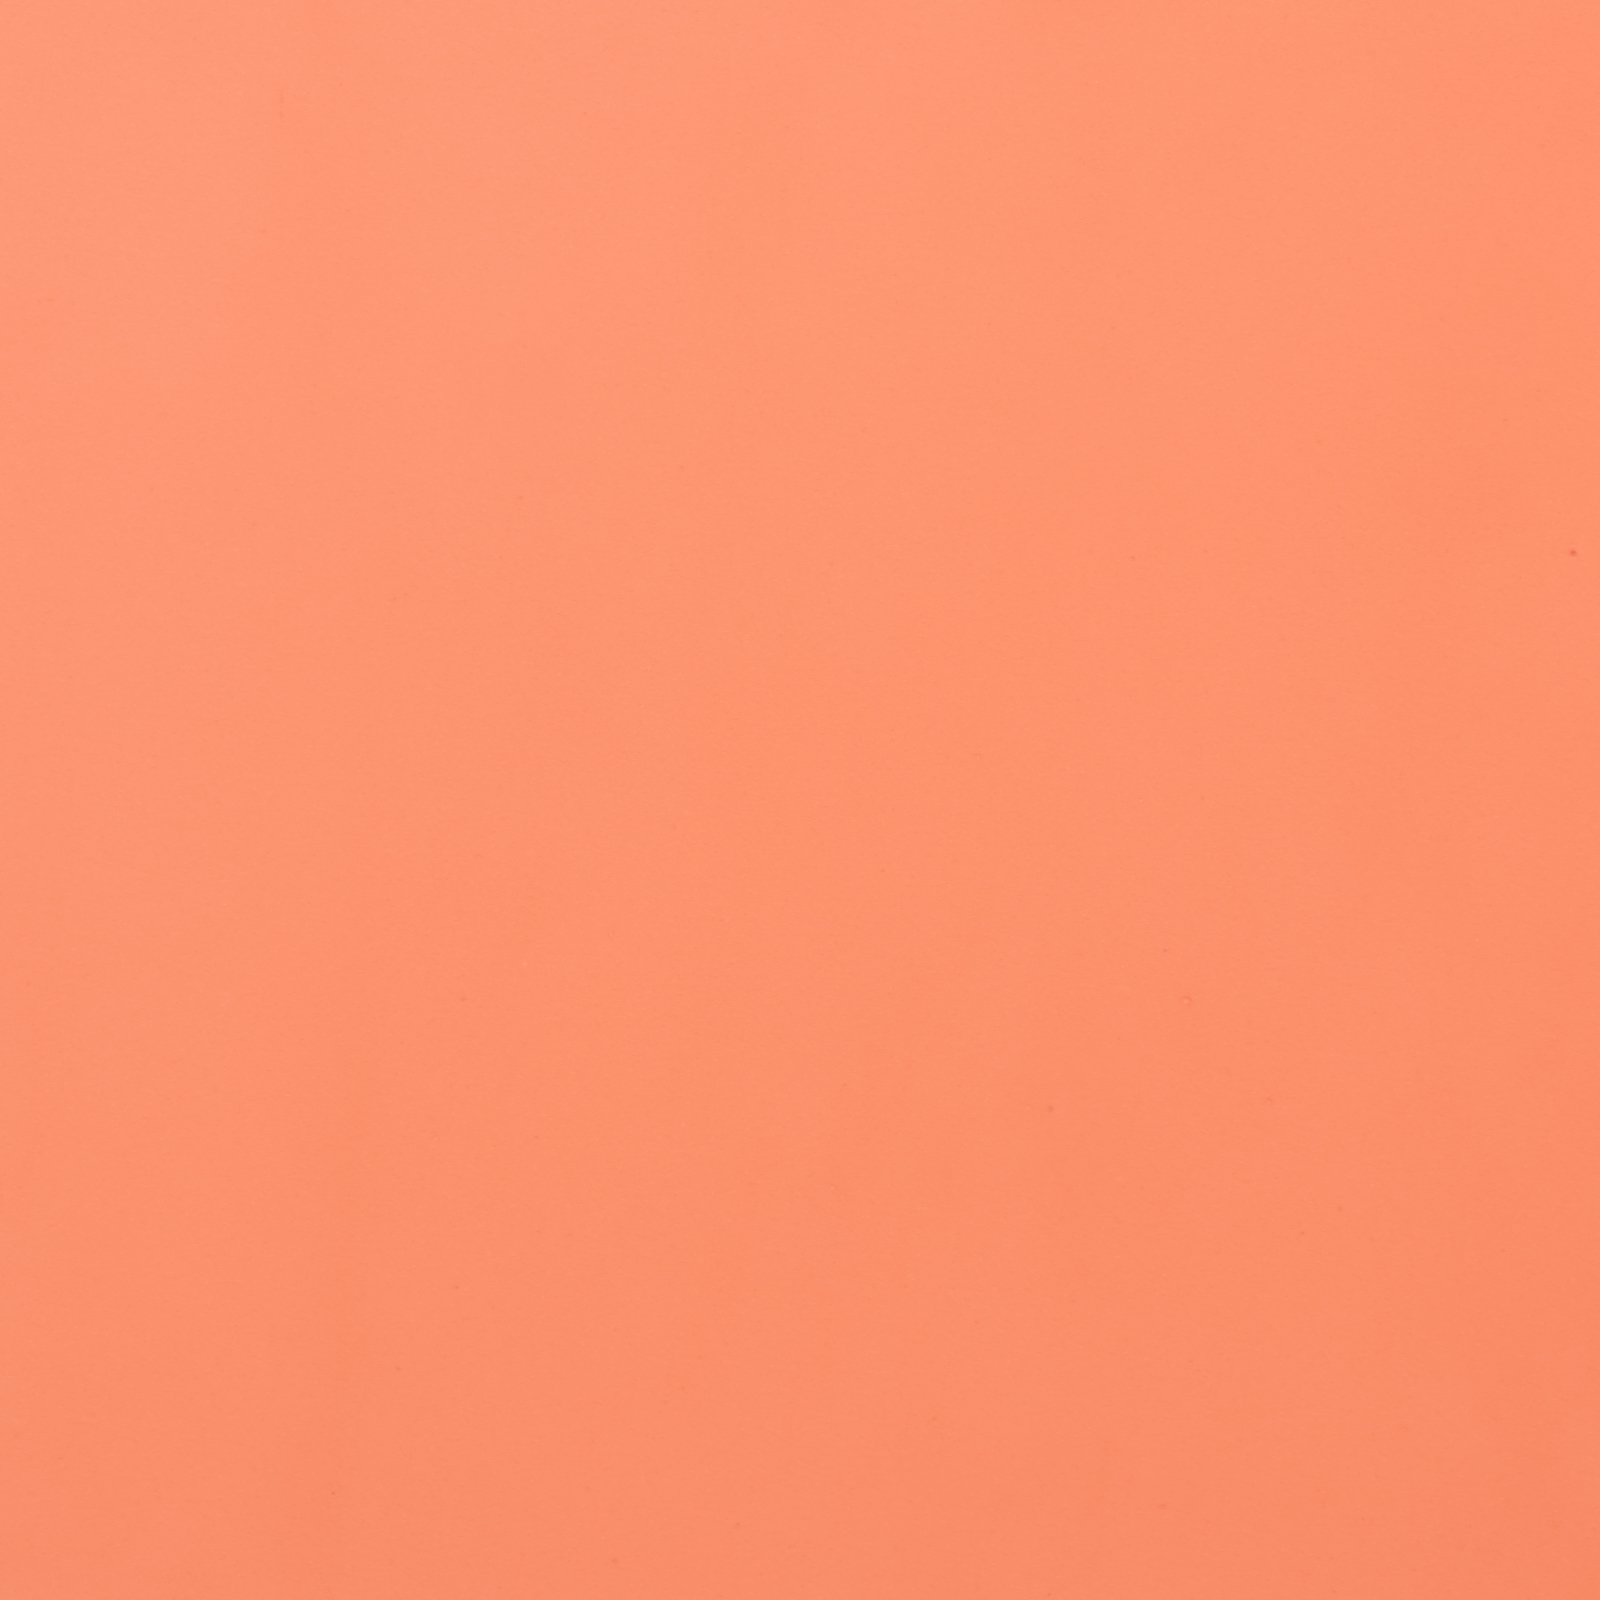 Лососевый цвет это. Персиковый цвет однотонный. Светло коралловый цвет. Бежево-оранжевый цвет. Бледно коралловый.